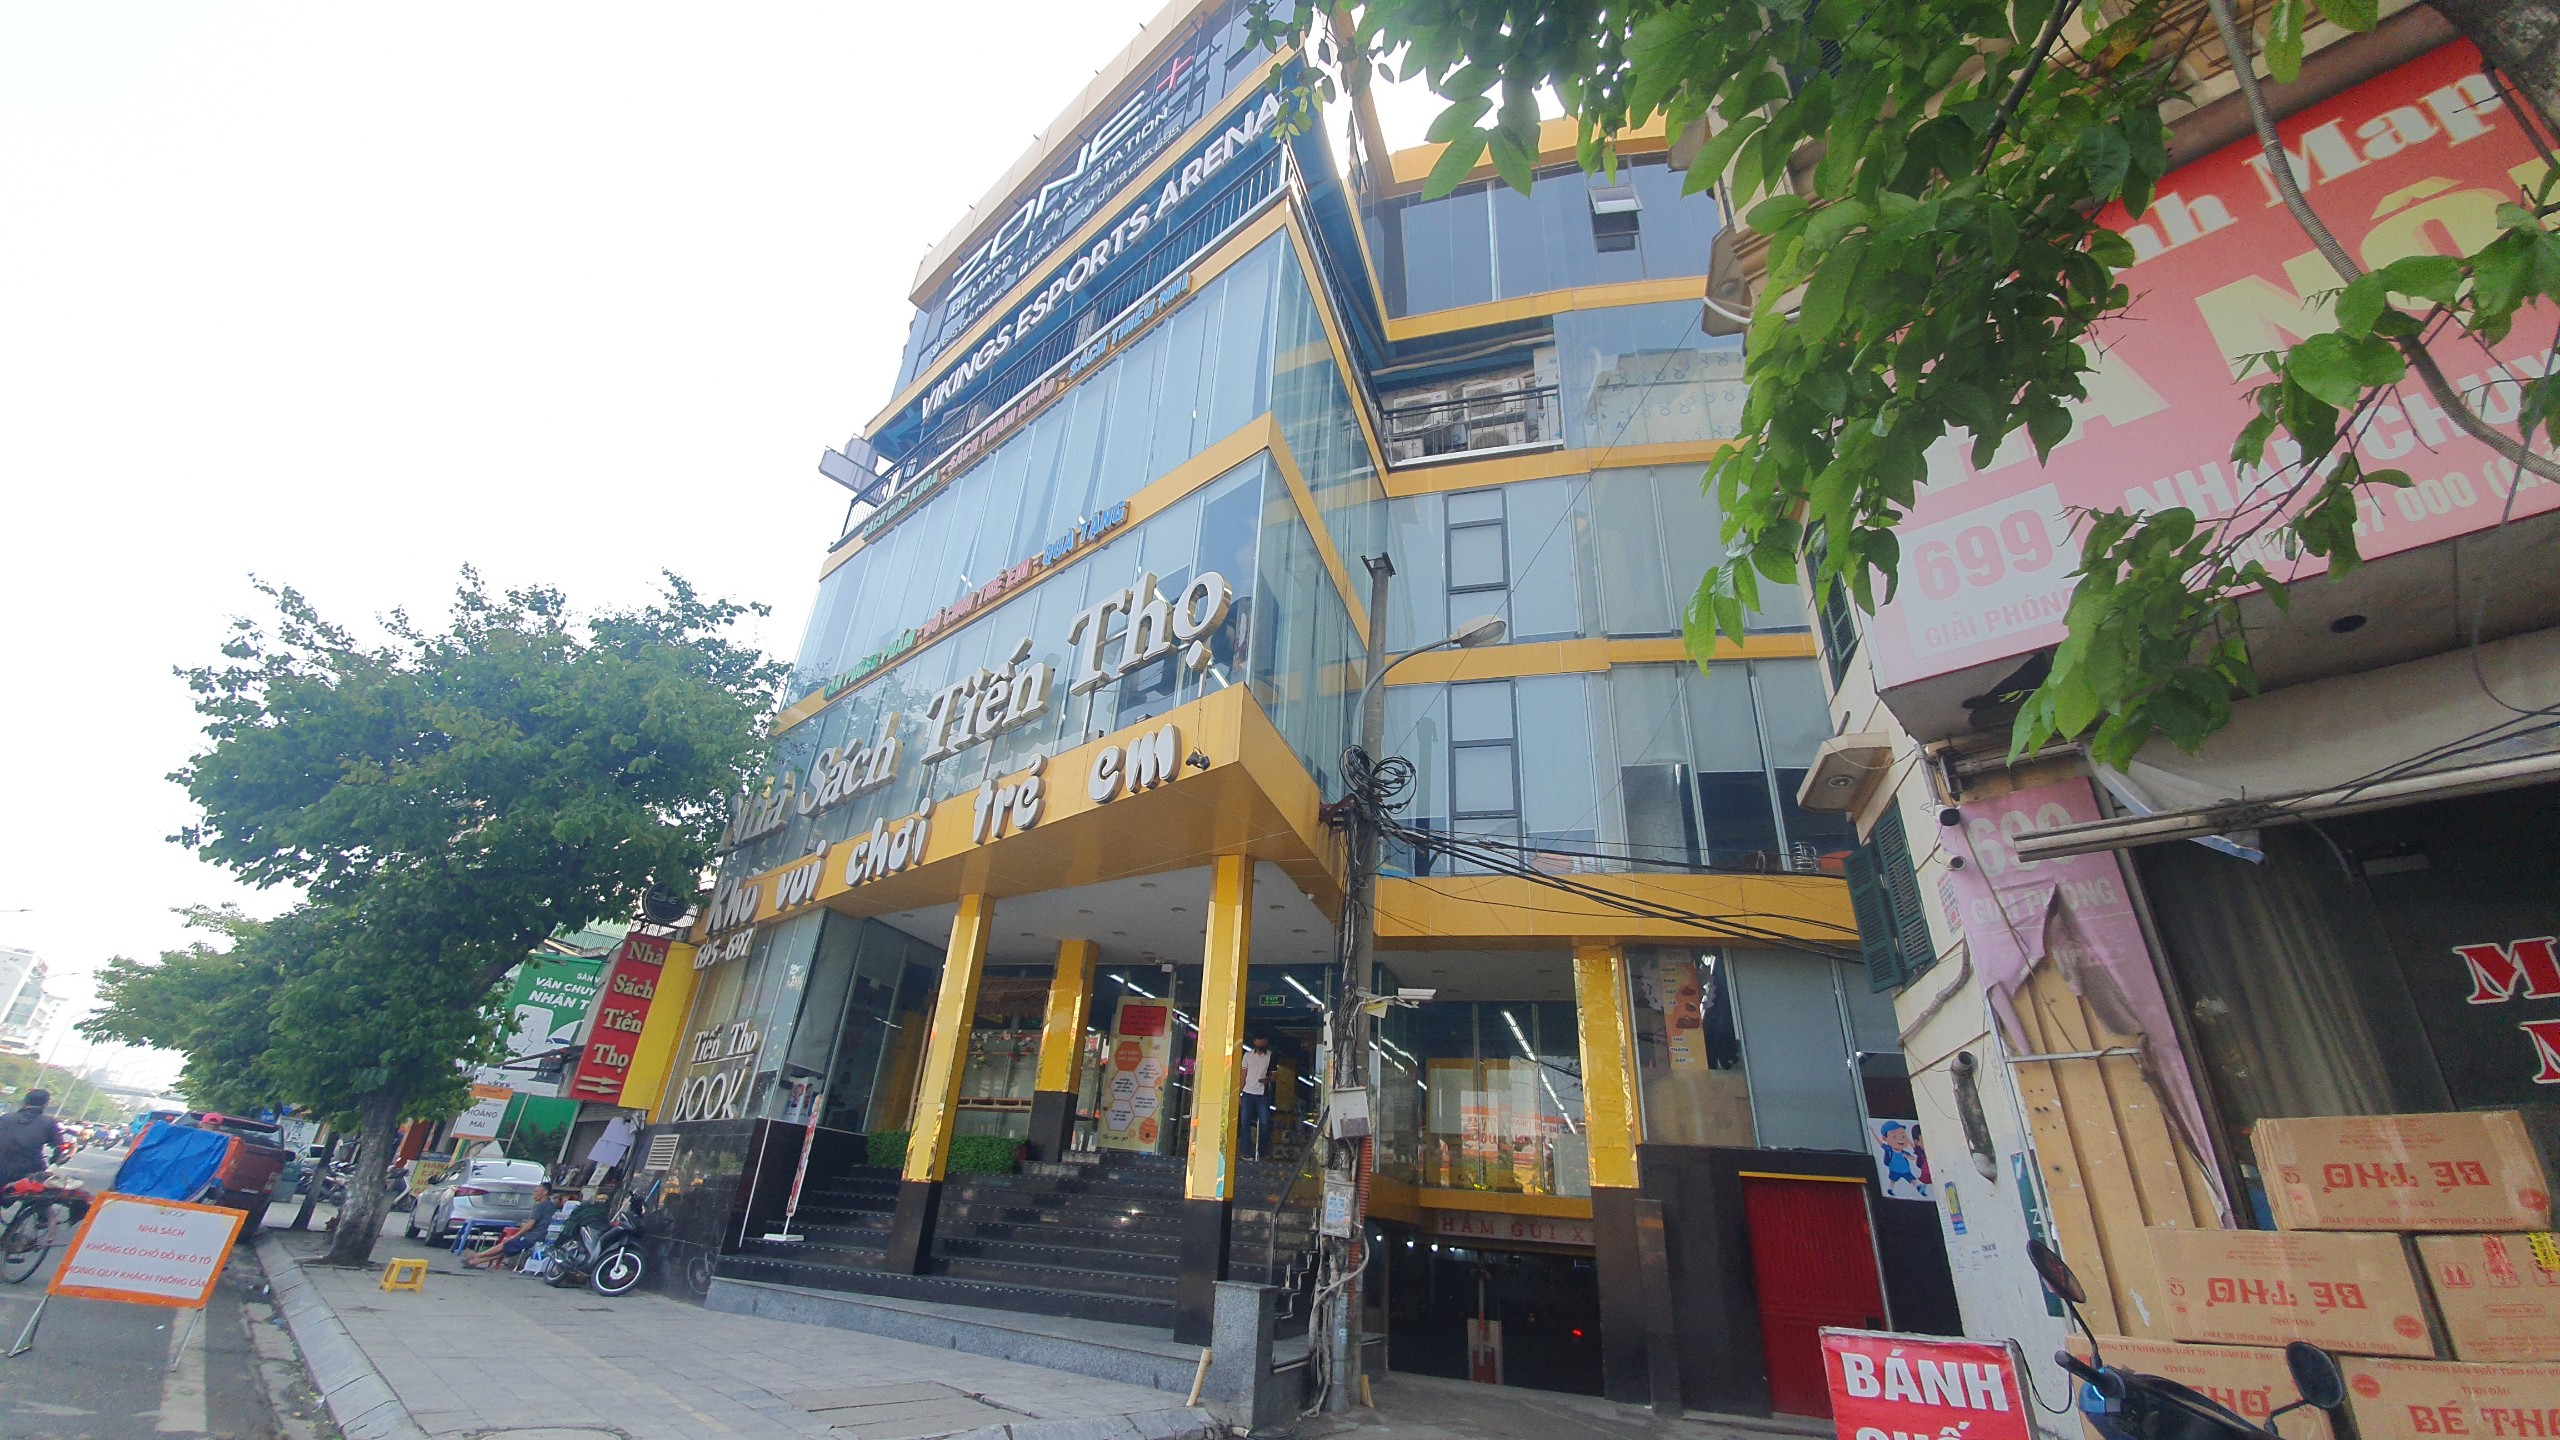 Thêm một cơ sở nhà sách Tiến Thọ bị bêu tên chưa đảm bảo PCCC - Ảnh 2.